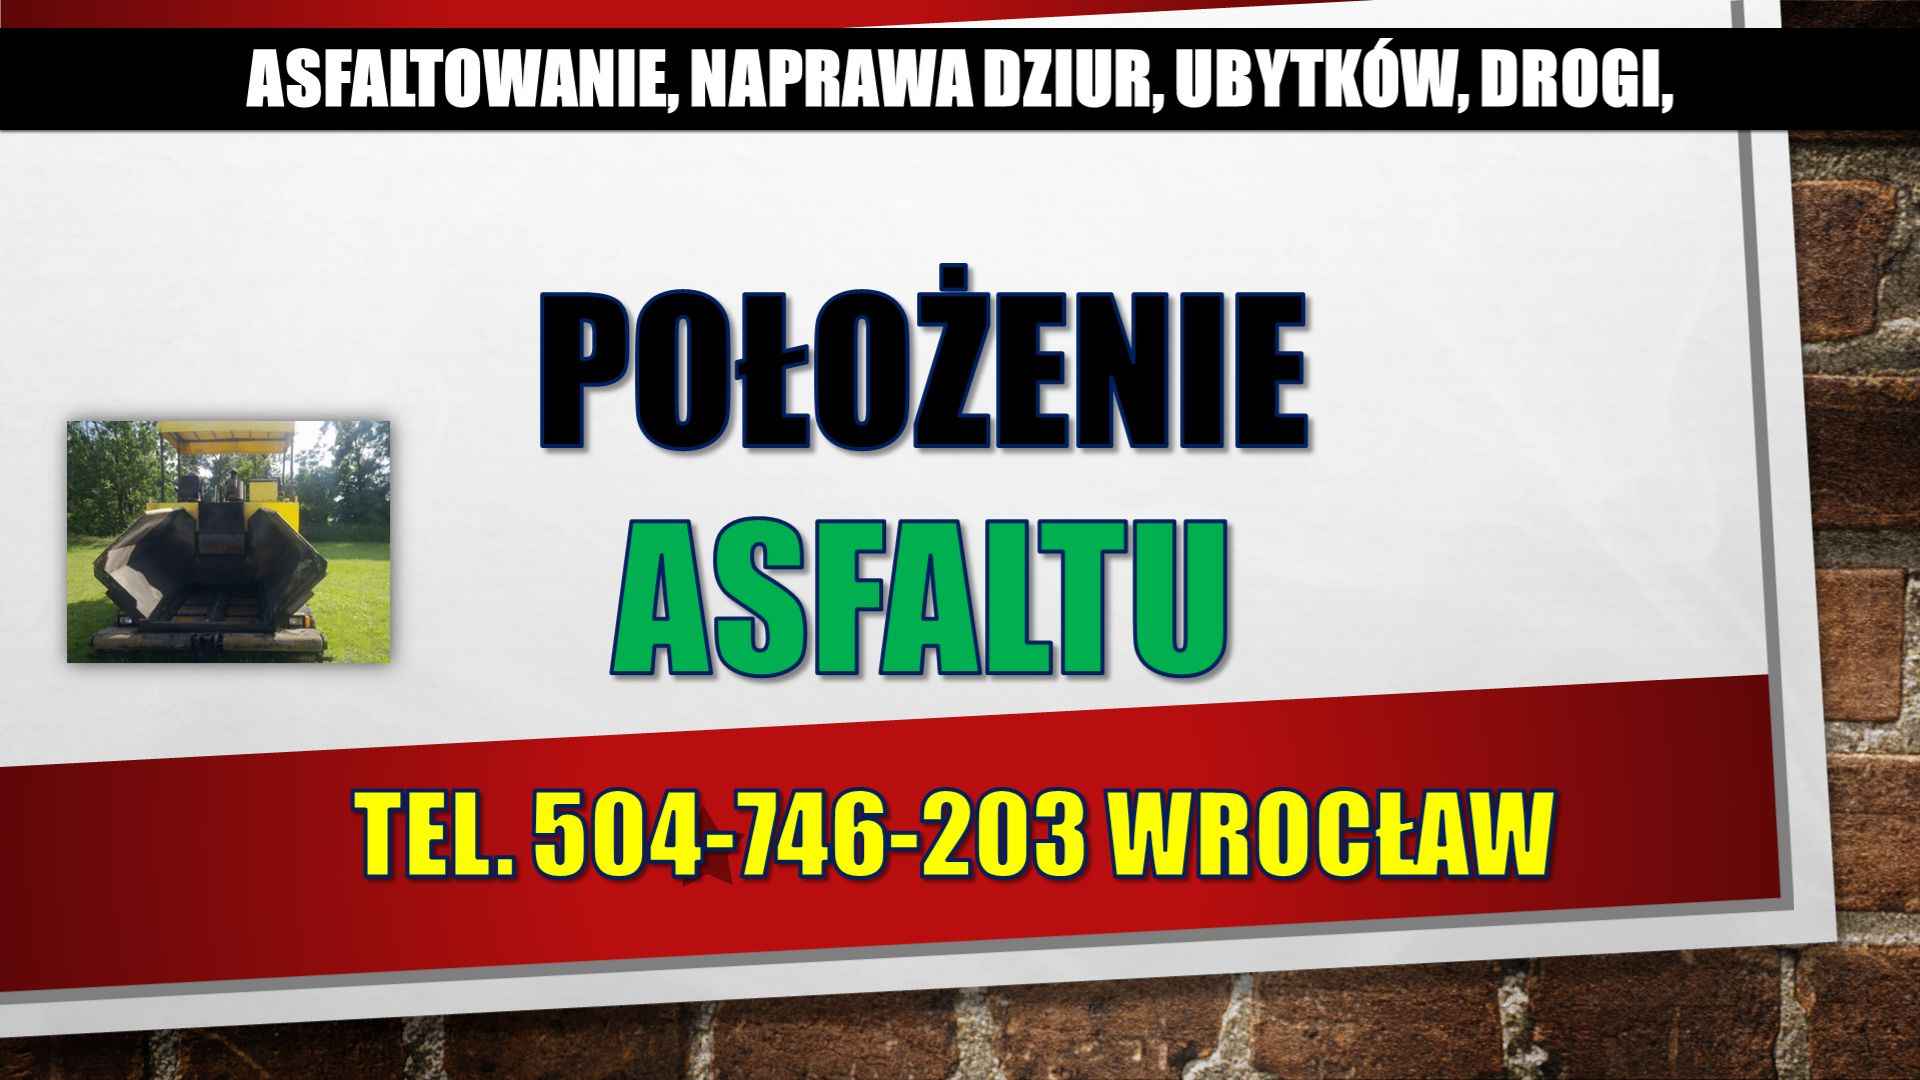 Asflaltowanie, t. 504-746-203, Wrocław, Łódź, Opole, układanie asfaltu Psie Pole - zdjęcie 5